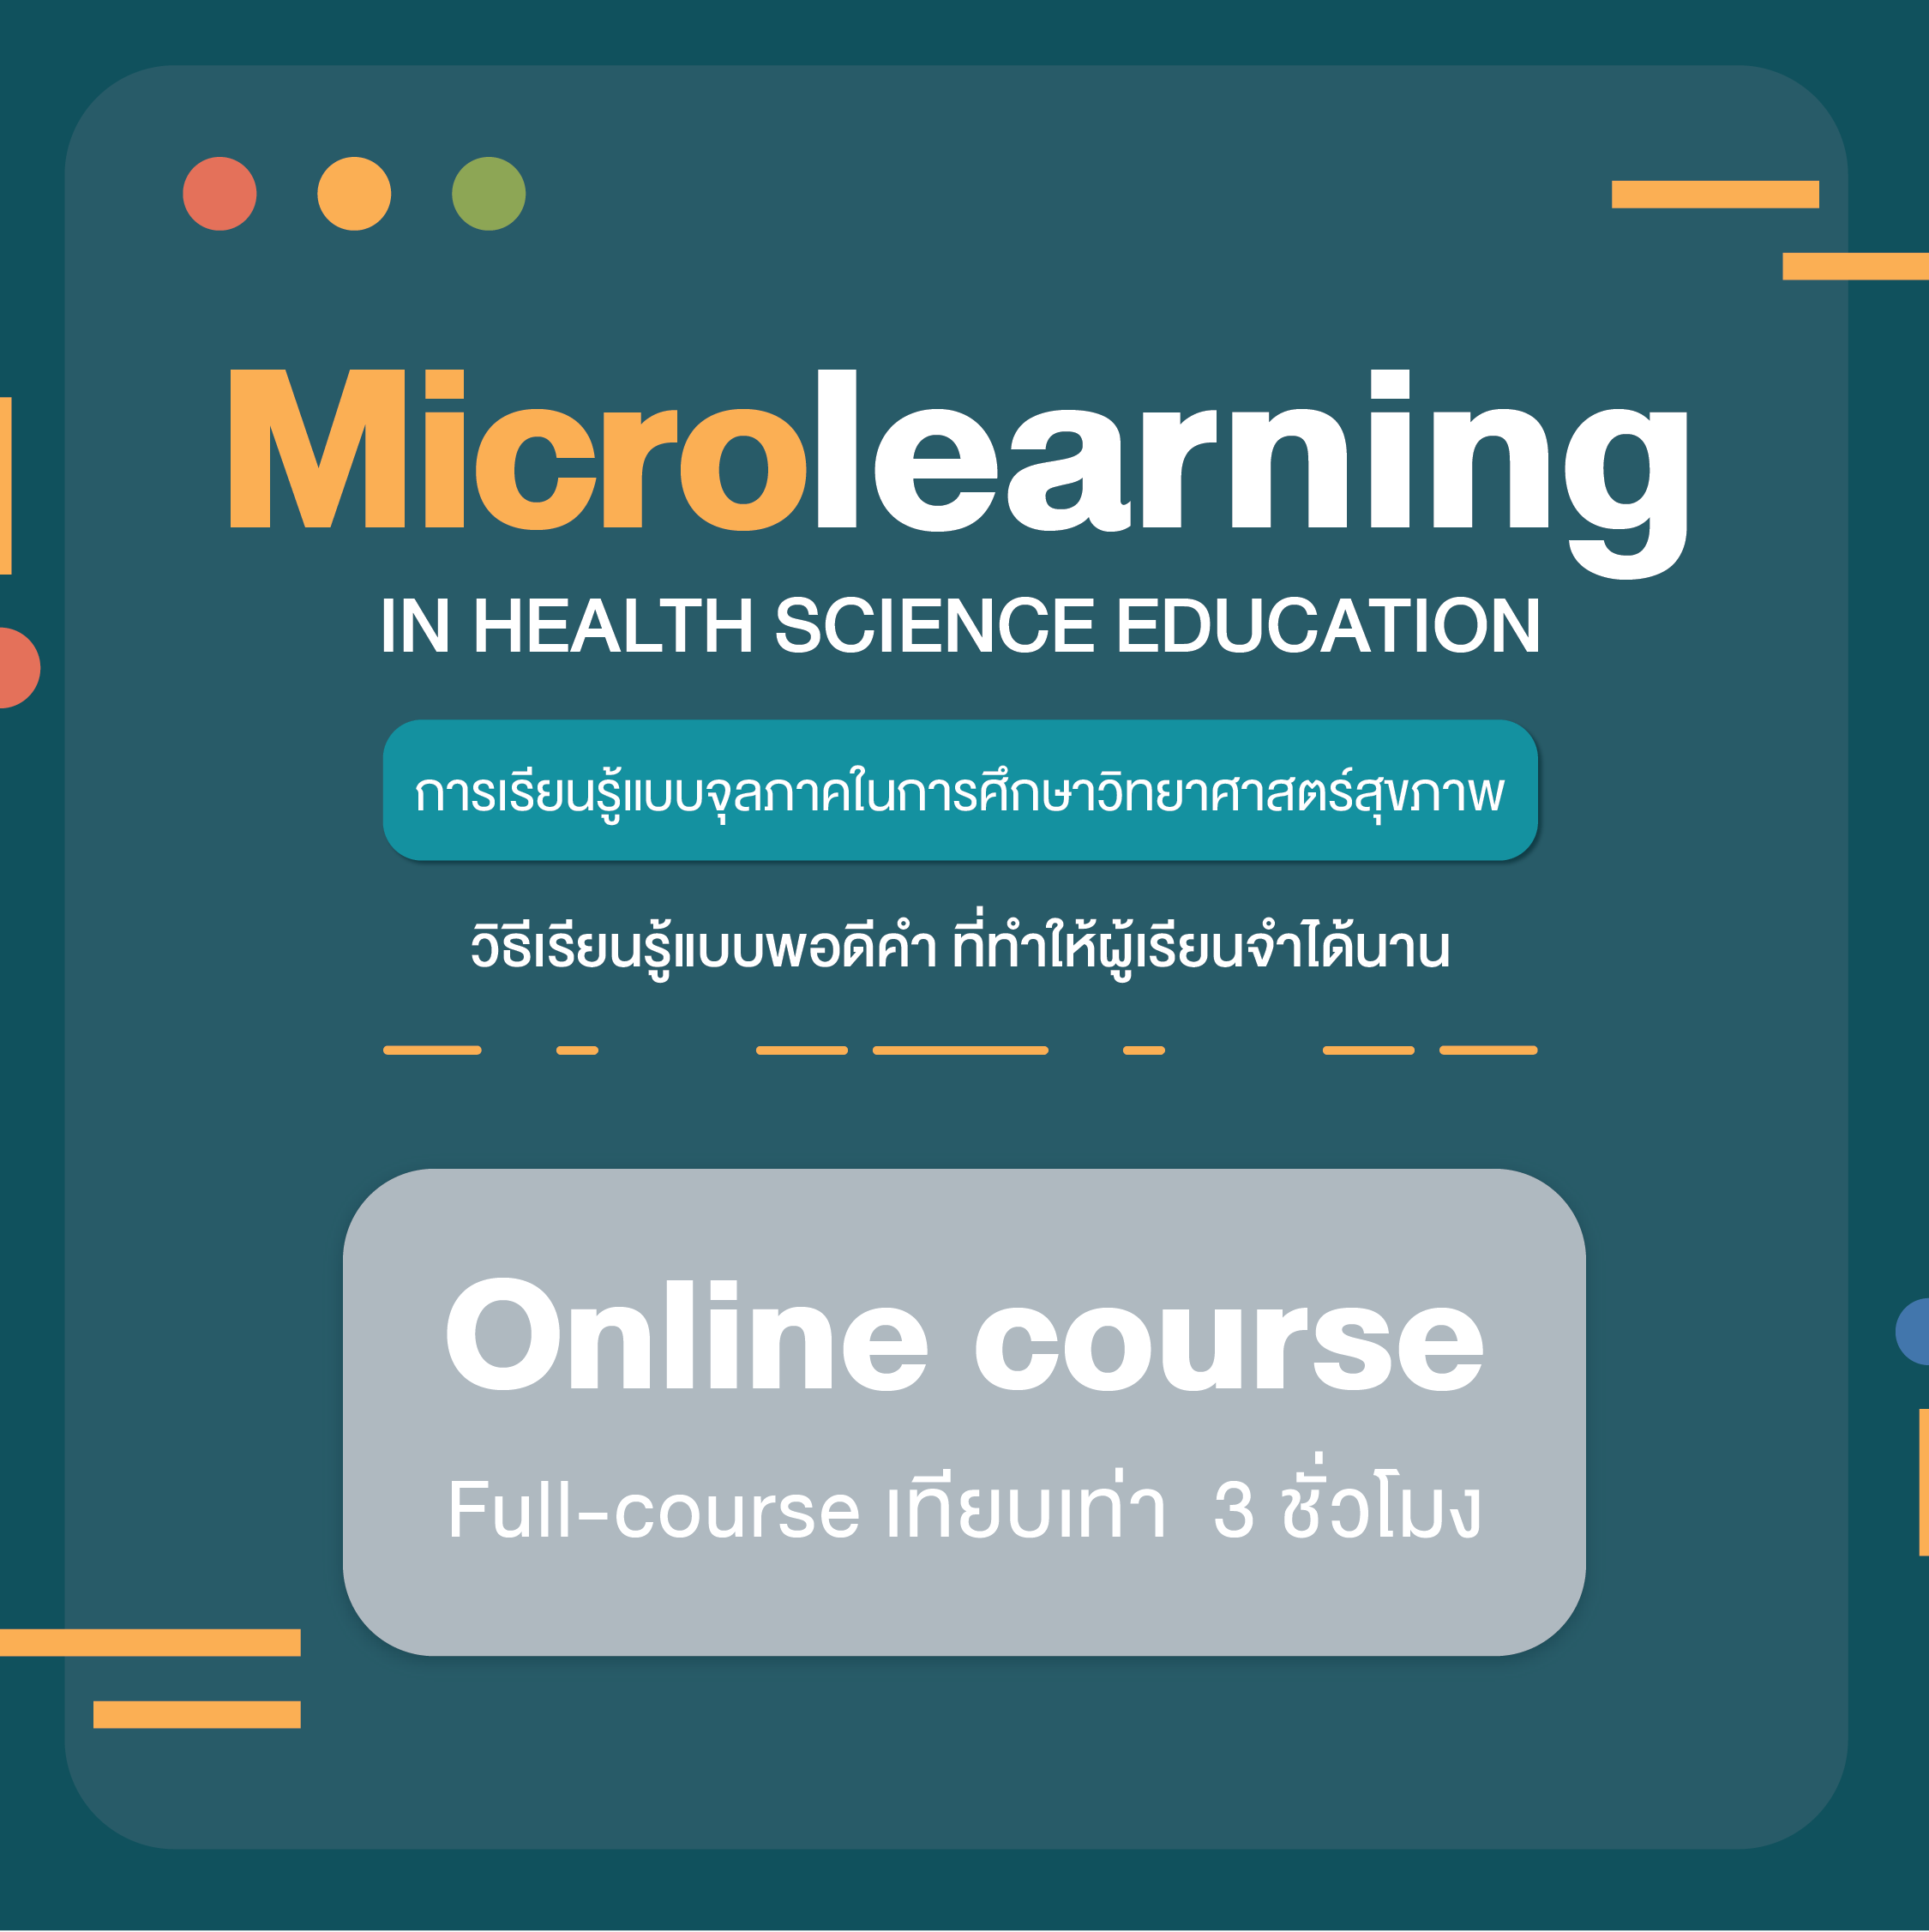 การเรียนรู้แบบจุลภาคในการศึกษาวิทยาศาสตร์สุขภาพ (Microlearning in Health Science Education) (3 ชม.)